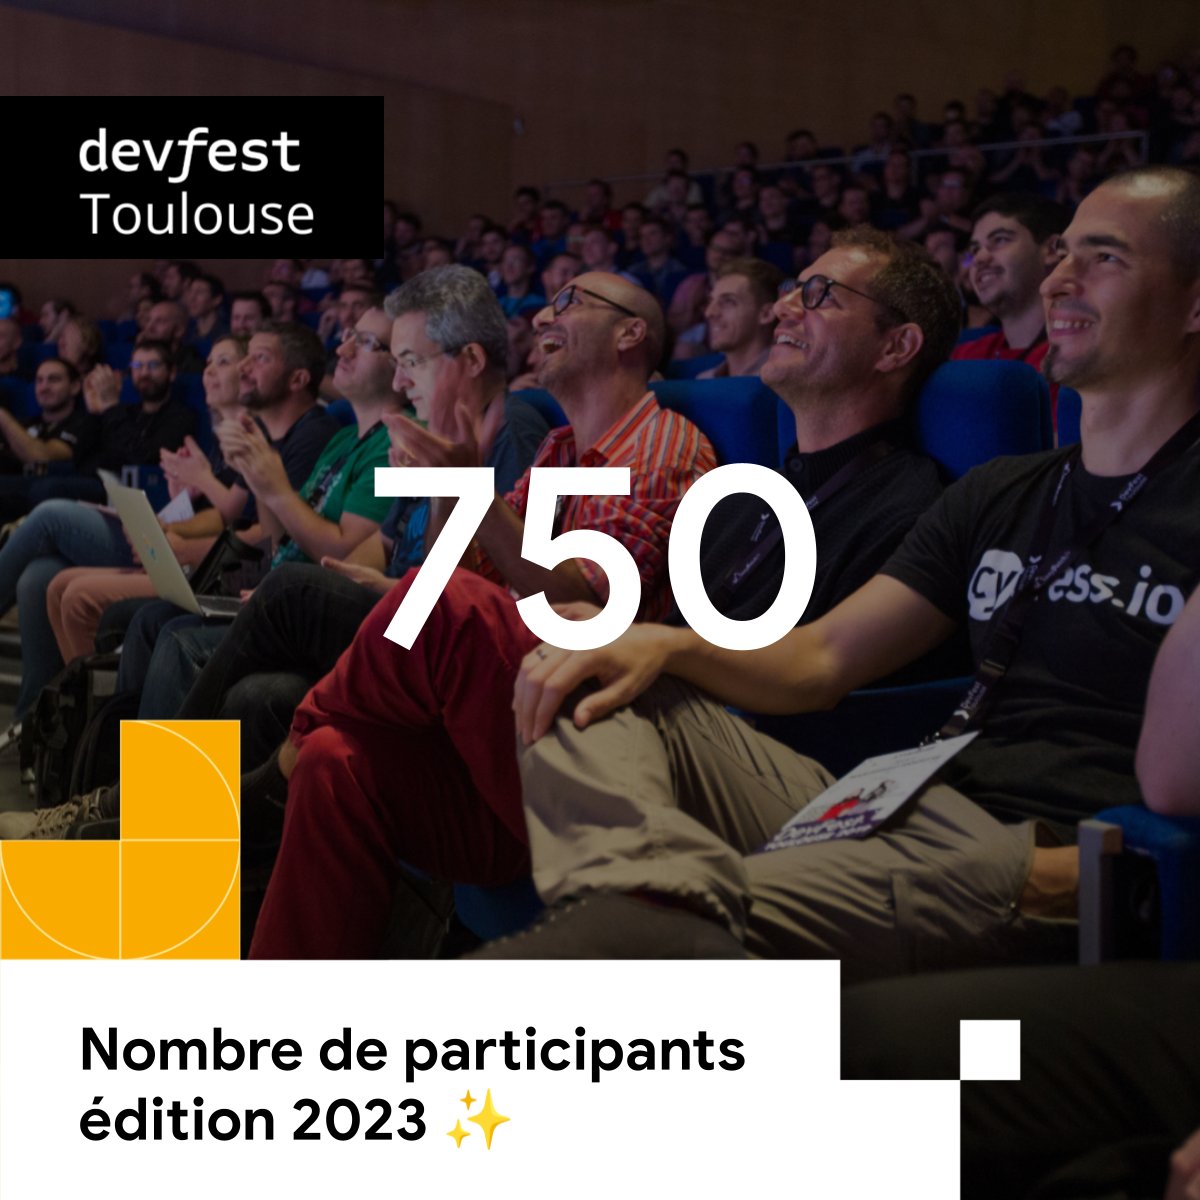 🚀✨ L’an dernier, vous étiez plus de 750 à participer au #DevFestToulouse !

Nous avons hâte de vous accueillir cette année avec encore plus de place, le 7 novembre 2024.

🎟️ N'oubliez pas que la billetterie Early bird pour le DevFest Toulouse 2024 ouvre le mardi 21 mai à 10h !